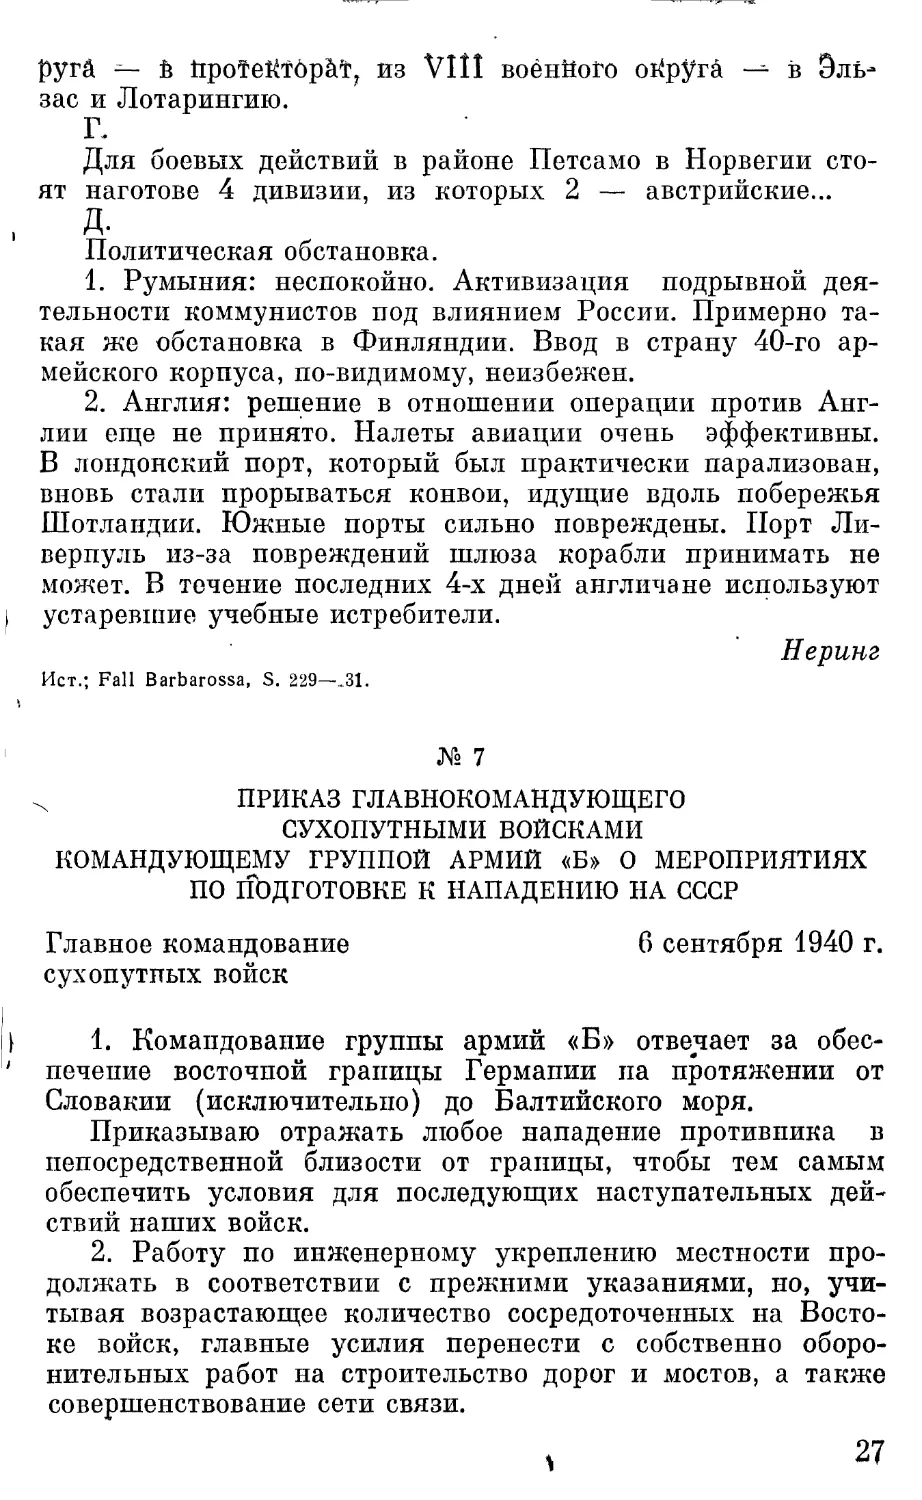 Приказ главнокомандующего сухопутными войсками командующему группой армий «Б» о мероприятиях по подготовке к нападению на СССР.